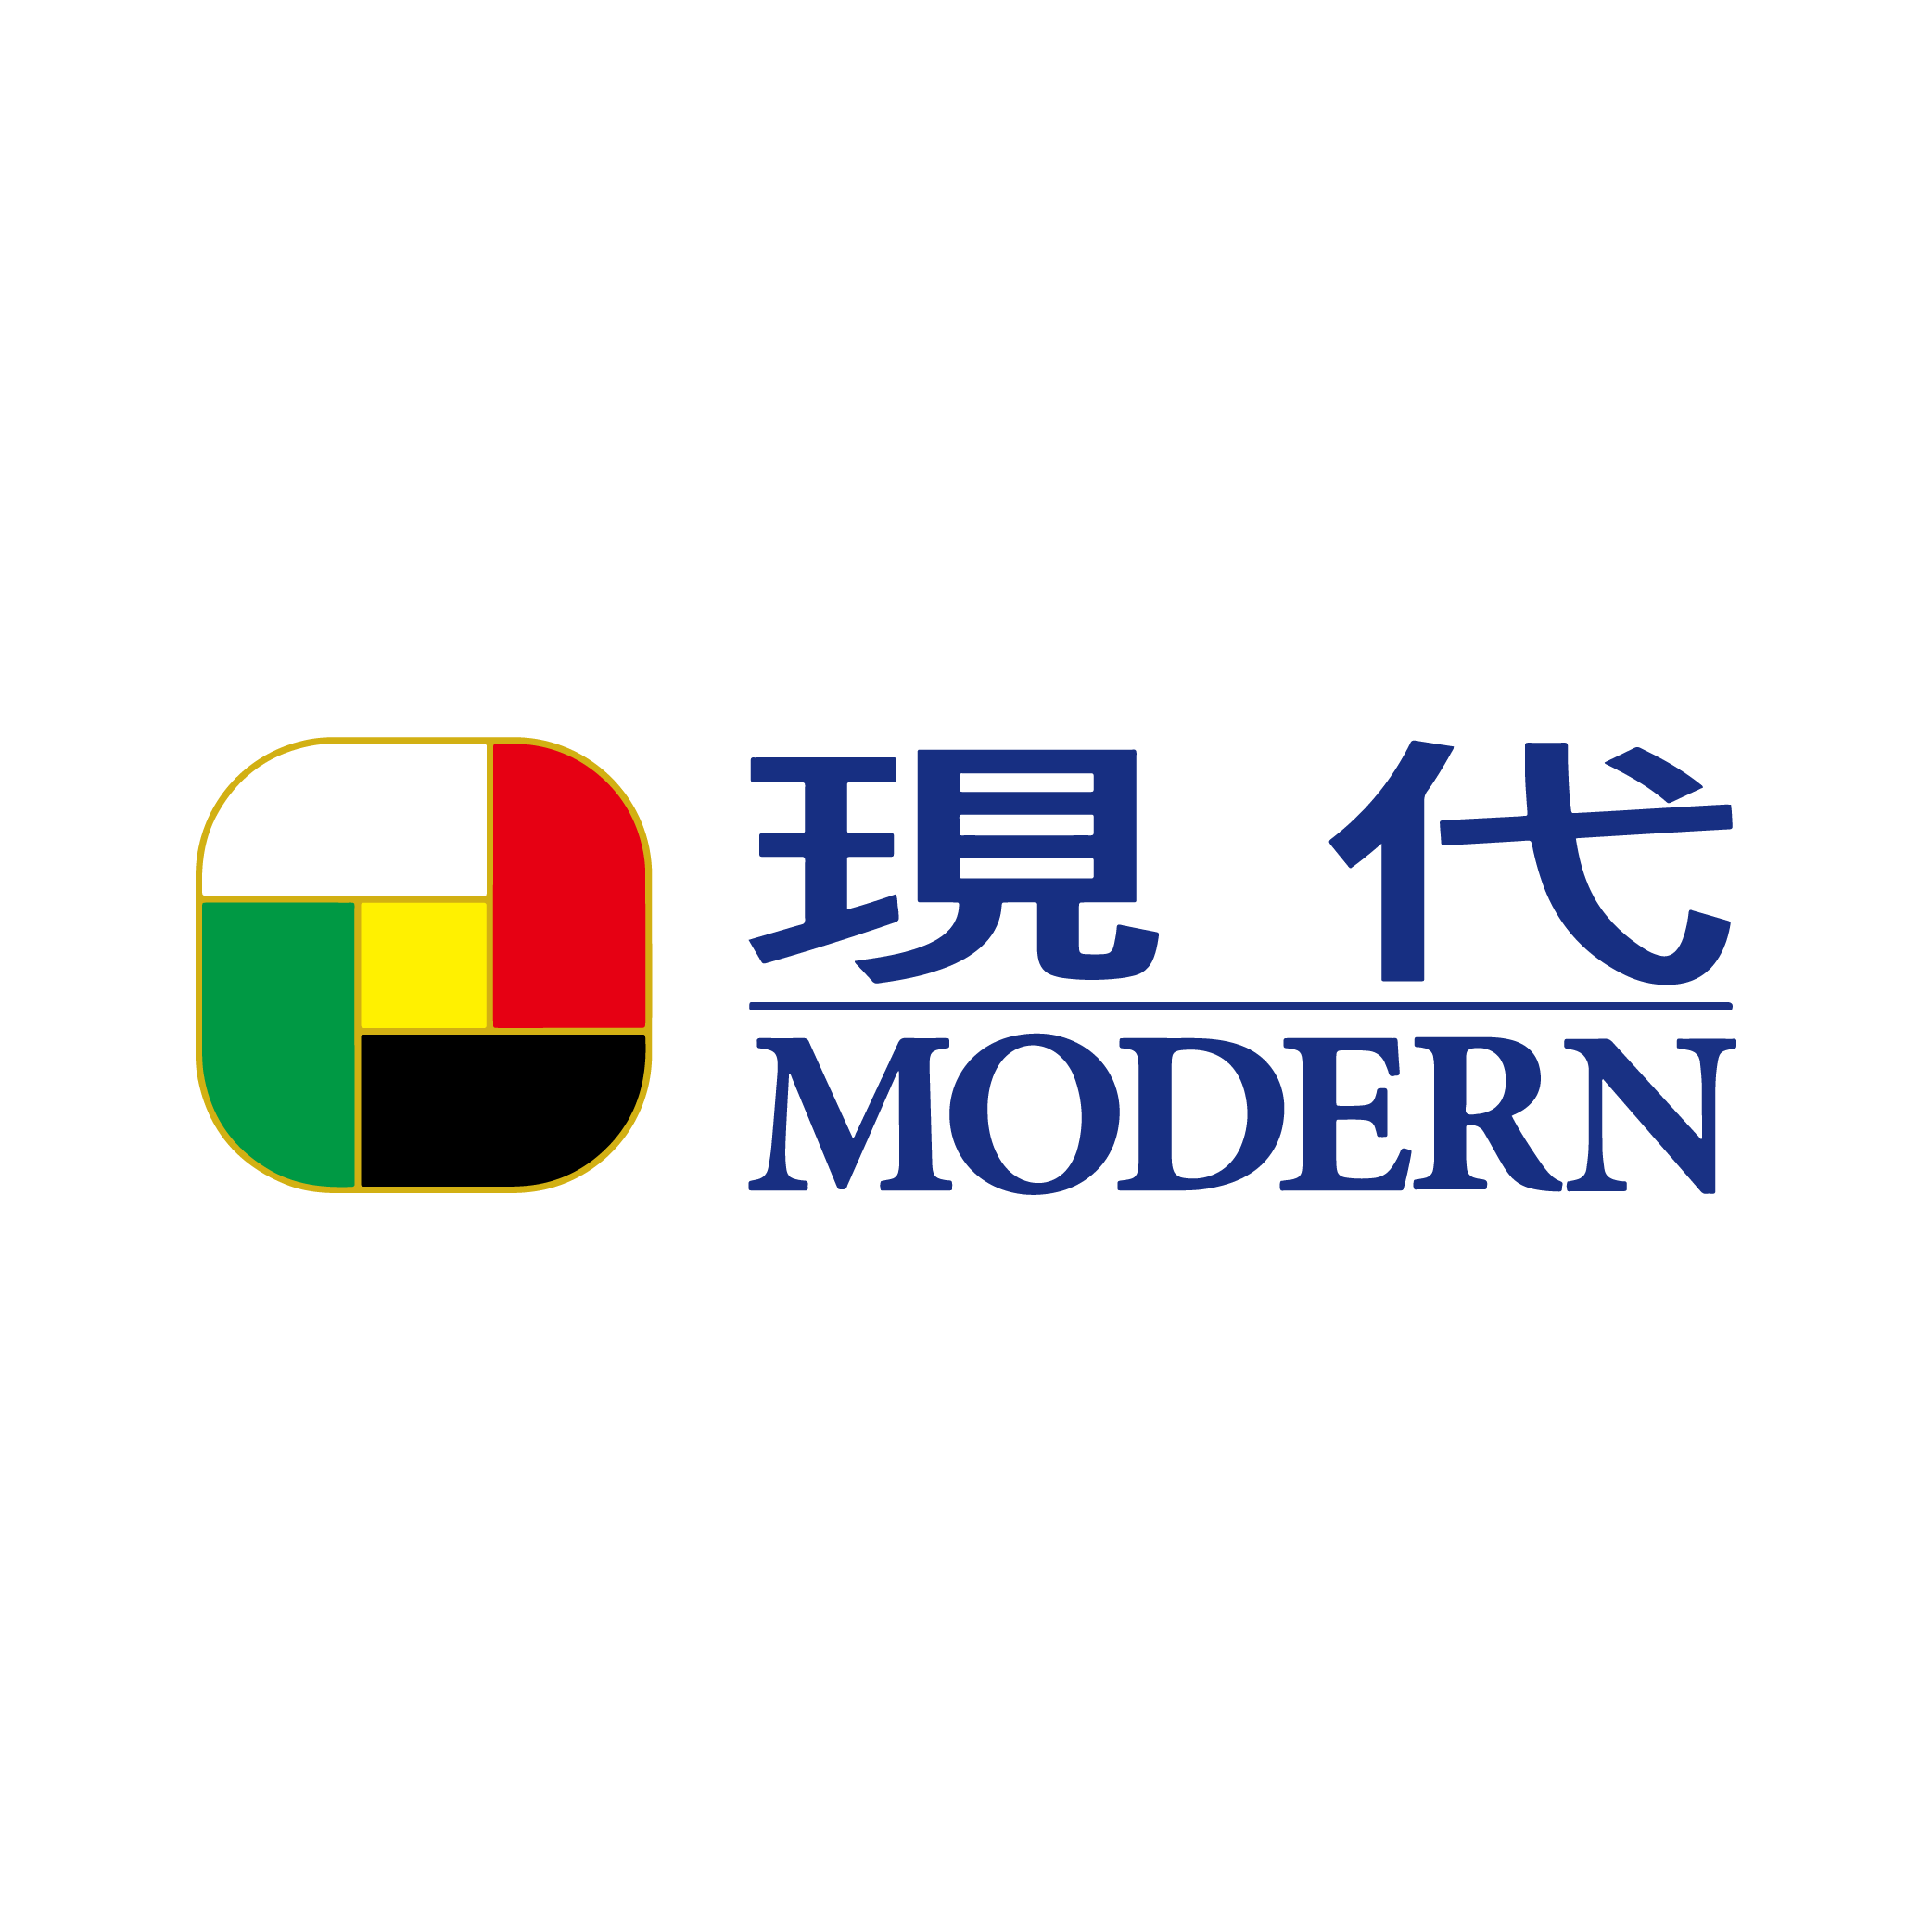 Nhóm hiện đại